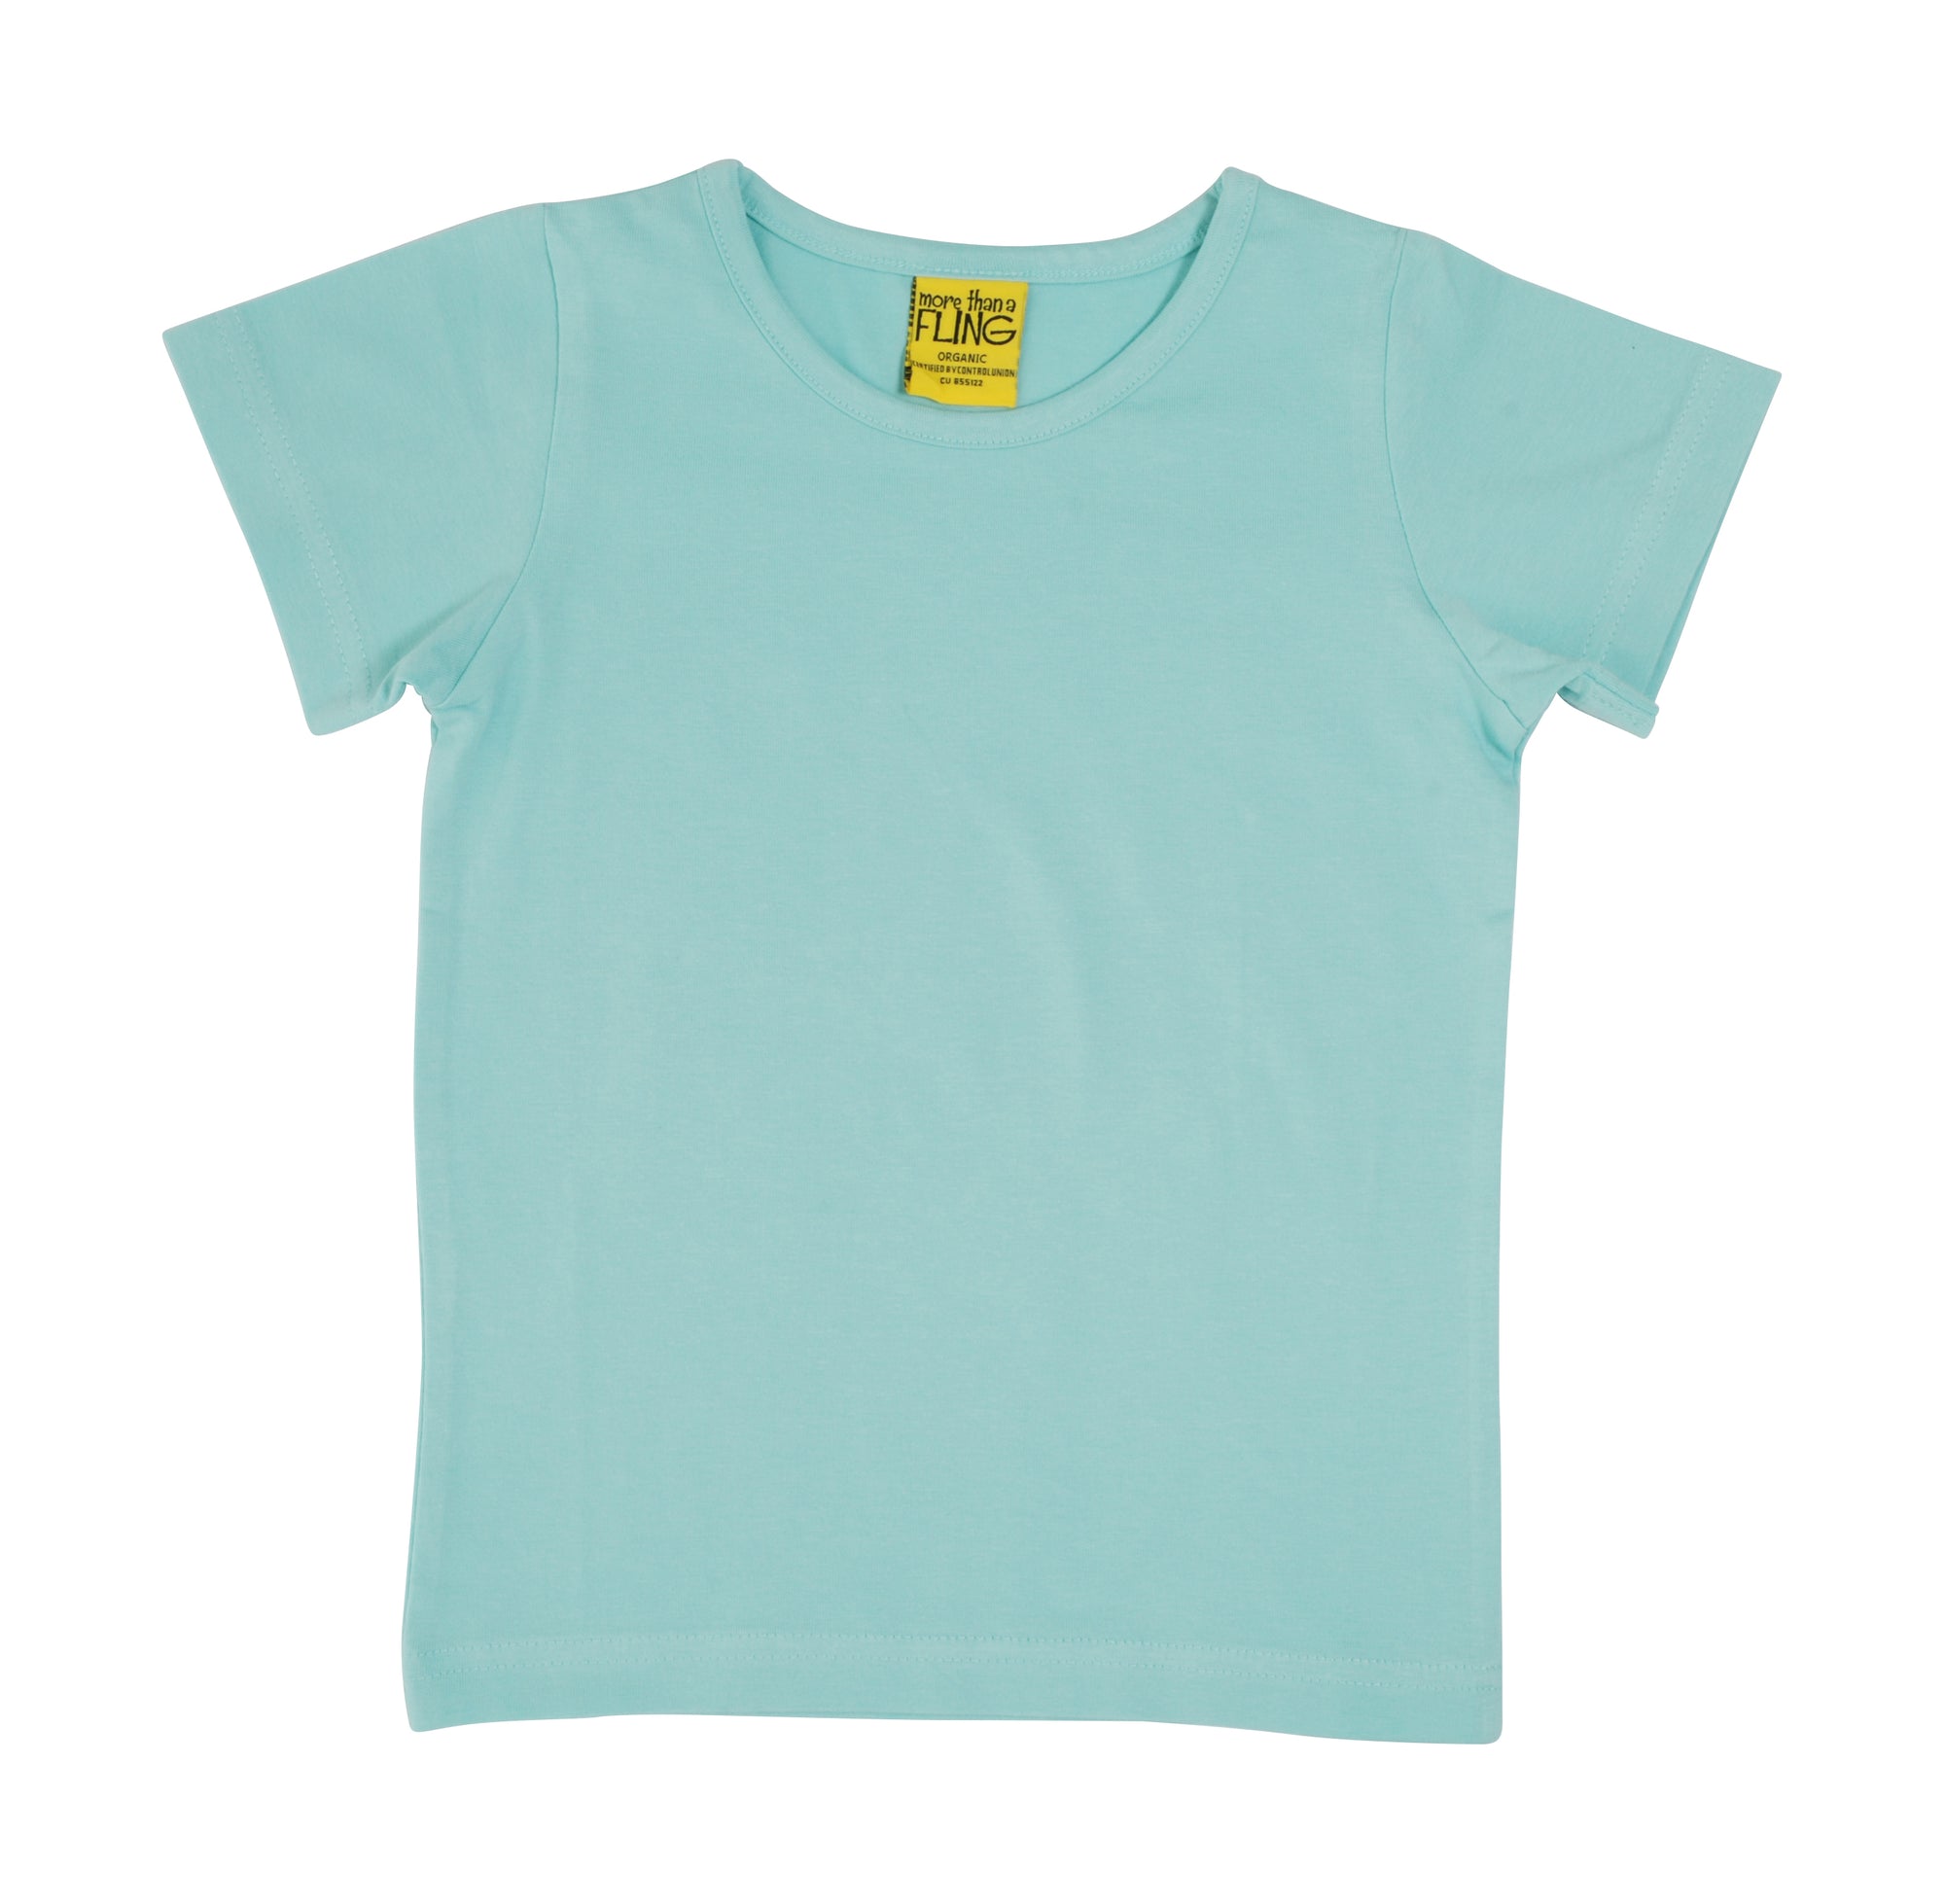 More Than A Fling T-Shirt Eggshell Blue - Zacht Blauw T-shirt